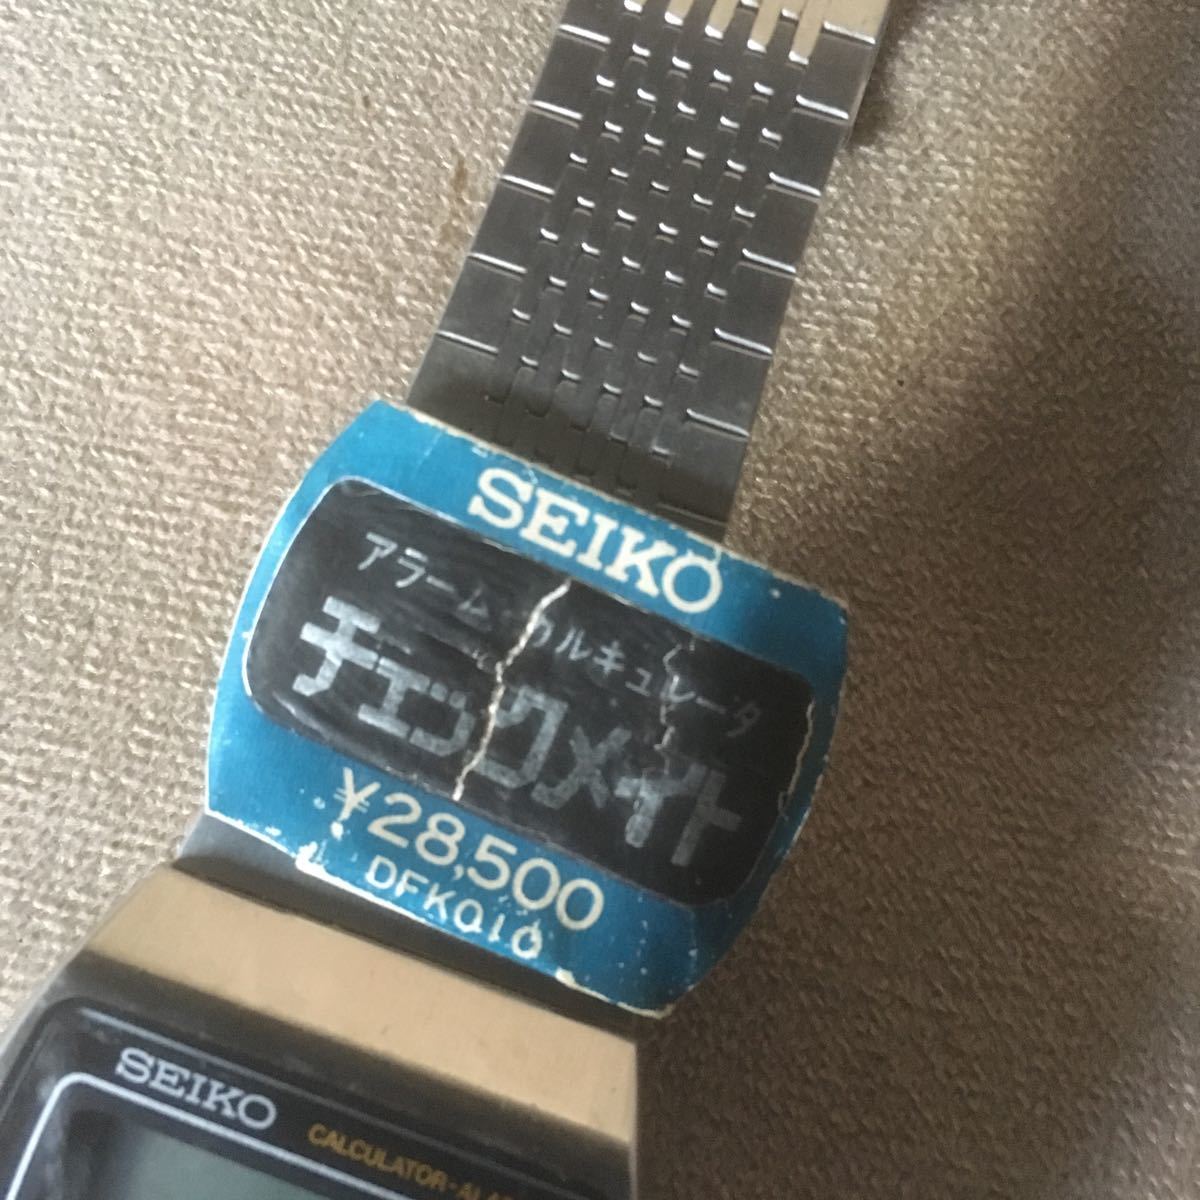 K8 SEIKO Seiko checkmate сигнализация наручные часы 0359-5000 чёрный неиспользуемый товар текущее состояние утиль 